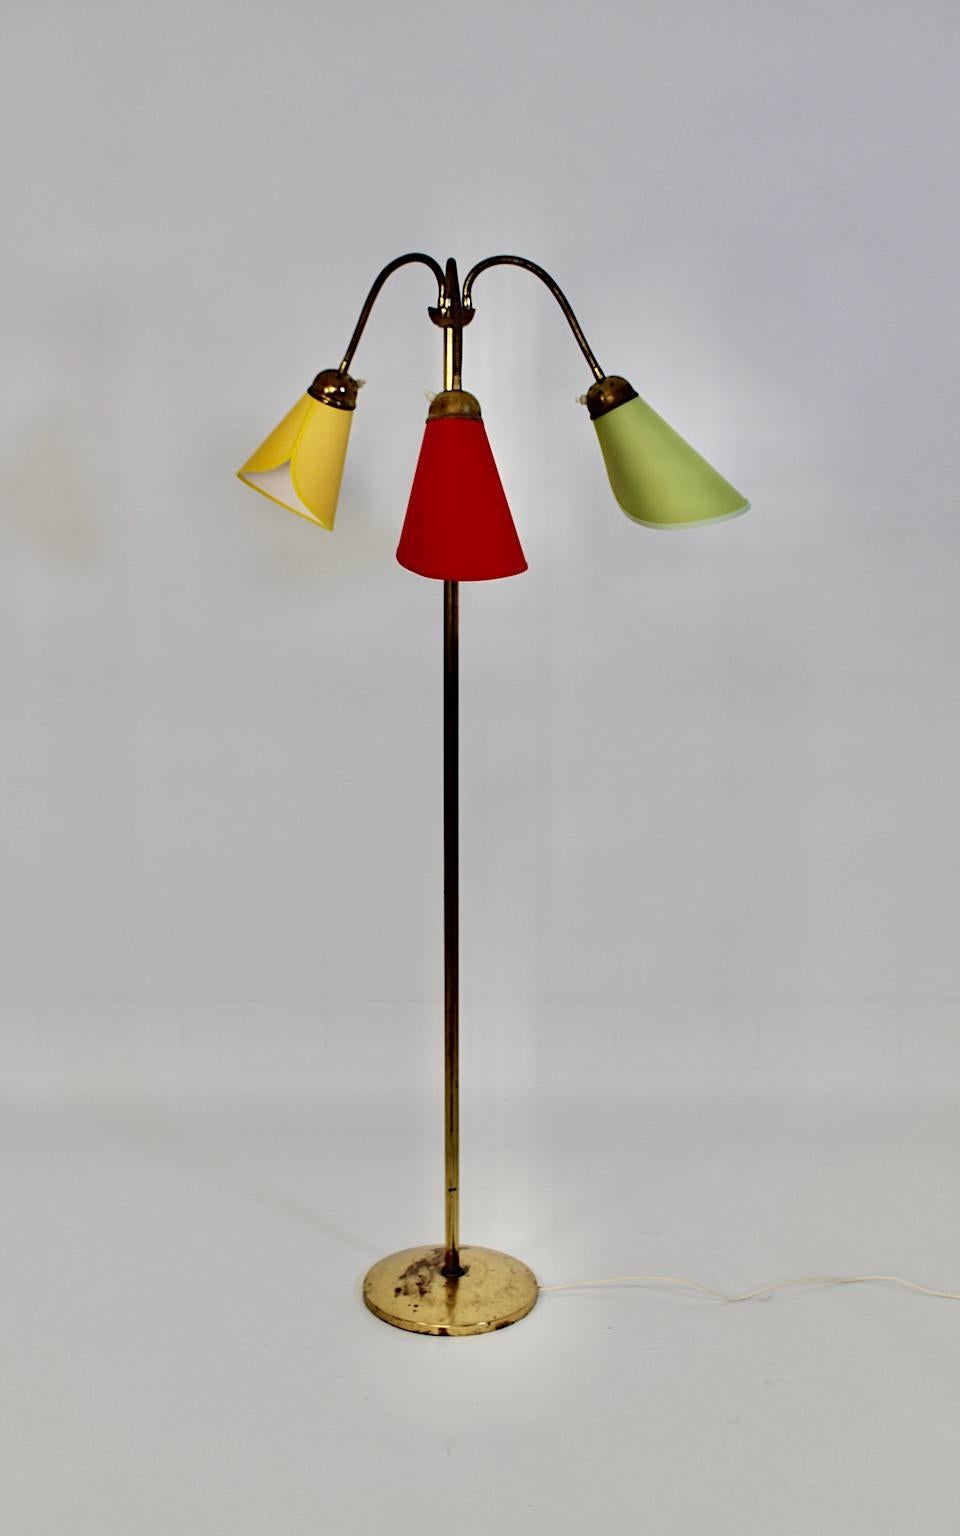 Mid Century Modern Vintage Messing Stehlampe mit bunten Lampenschirmen 1950s Österreich.
Eine atemberaubende Stehlampe aus Messing mit drei biegsamen Armen, die von handgefertigten Lampenschirmen in Kegelform mit kreisförmigem Sockel gekrönt